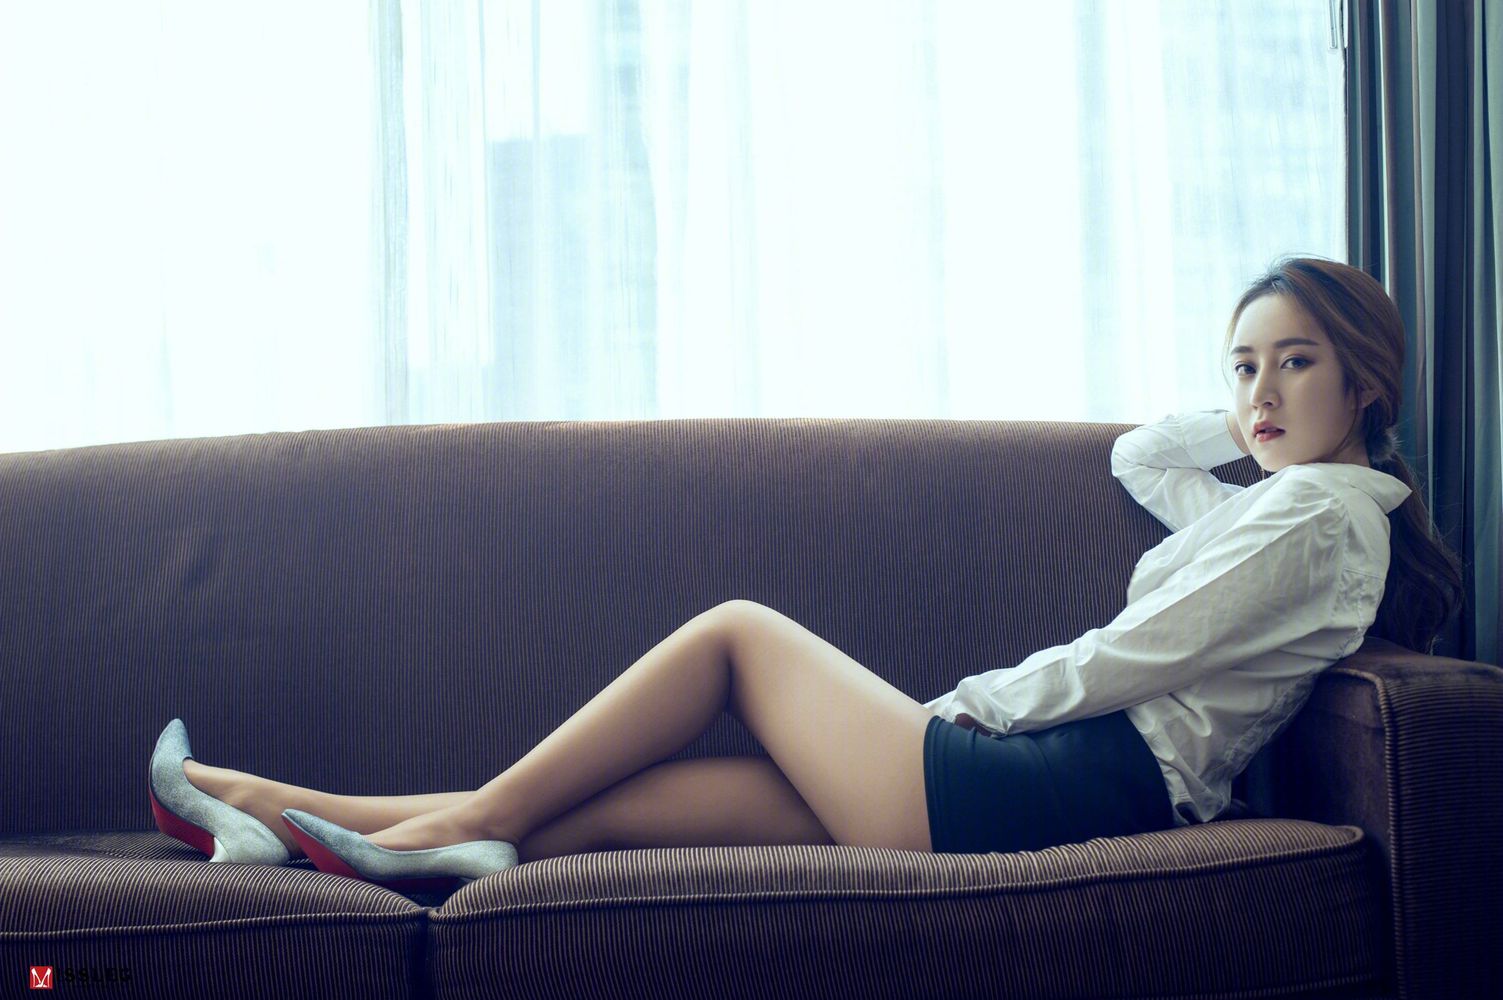 美女模特乔依琳白衬衫黑丝美腿性感私房写真